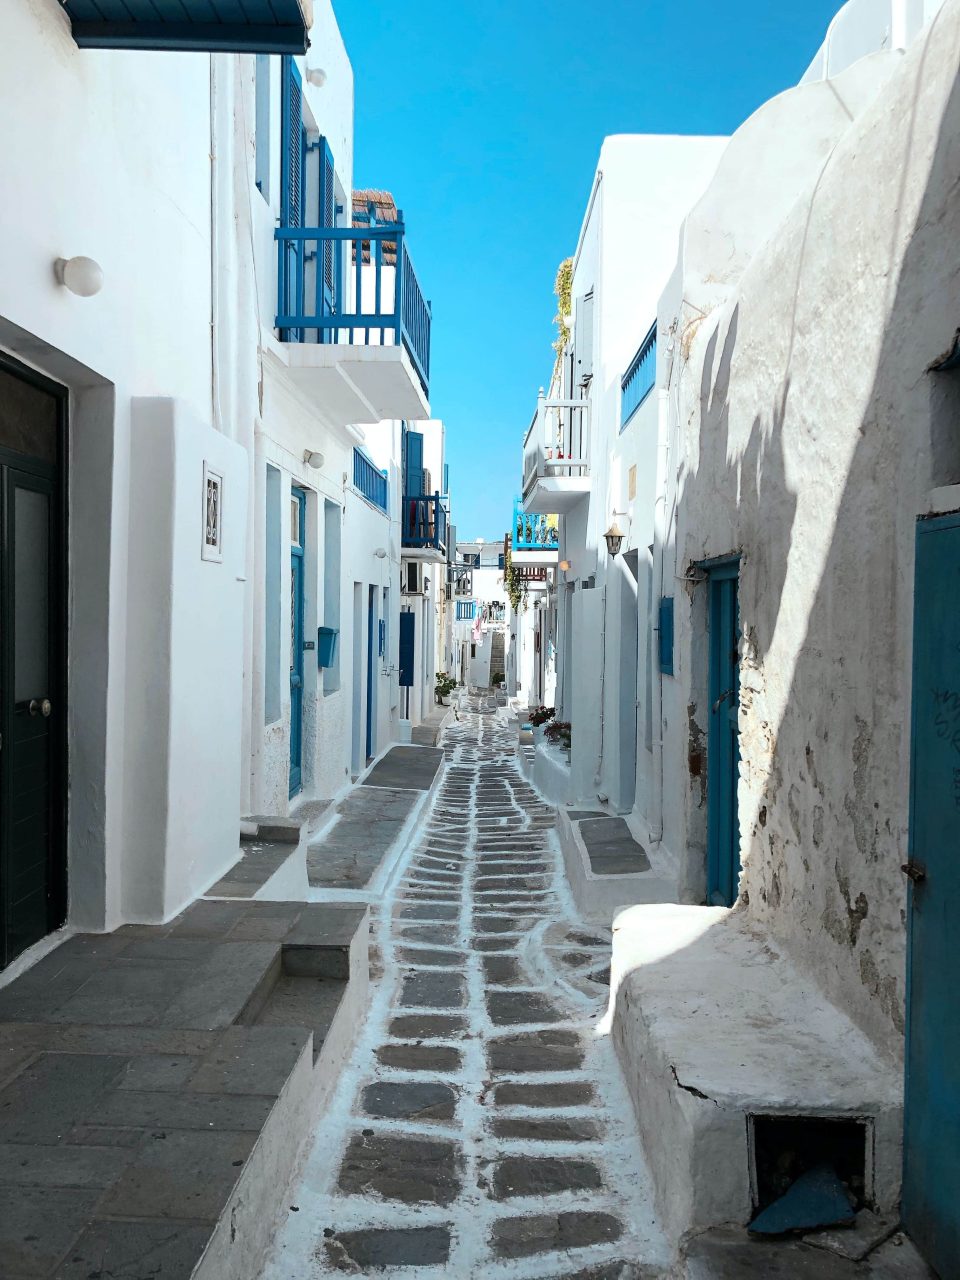 Cosa fare a Mykonos se non visitare subito il centro di Chora?
Autentico quartiere in bianco e blu fatto di strade piccole